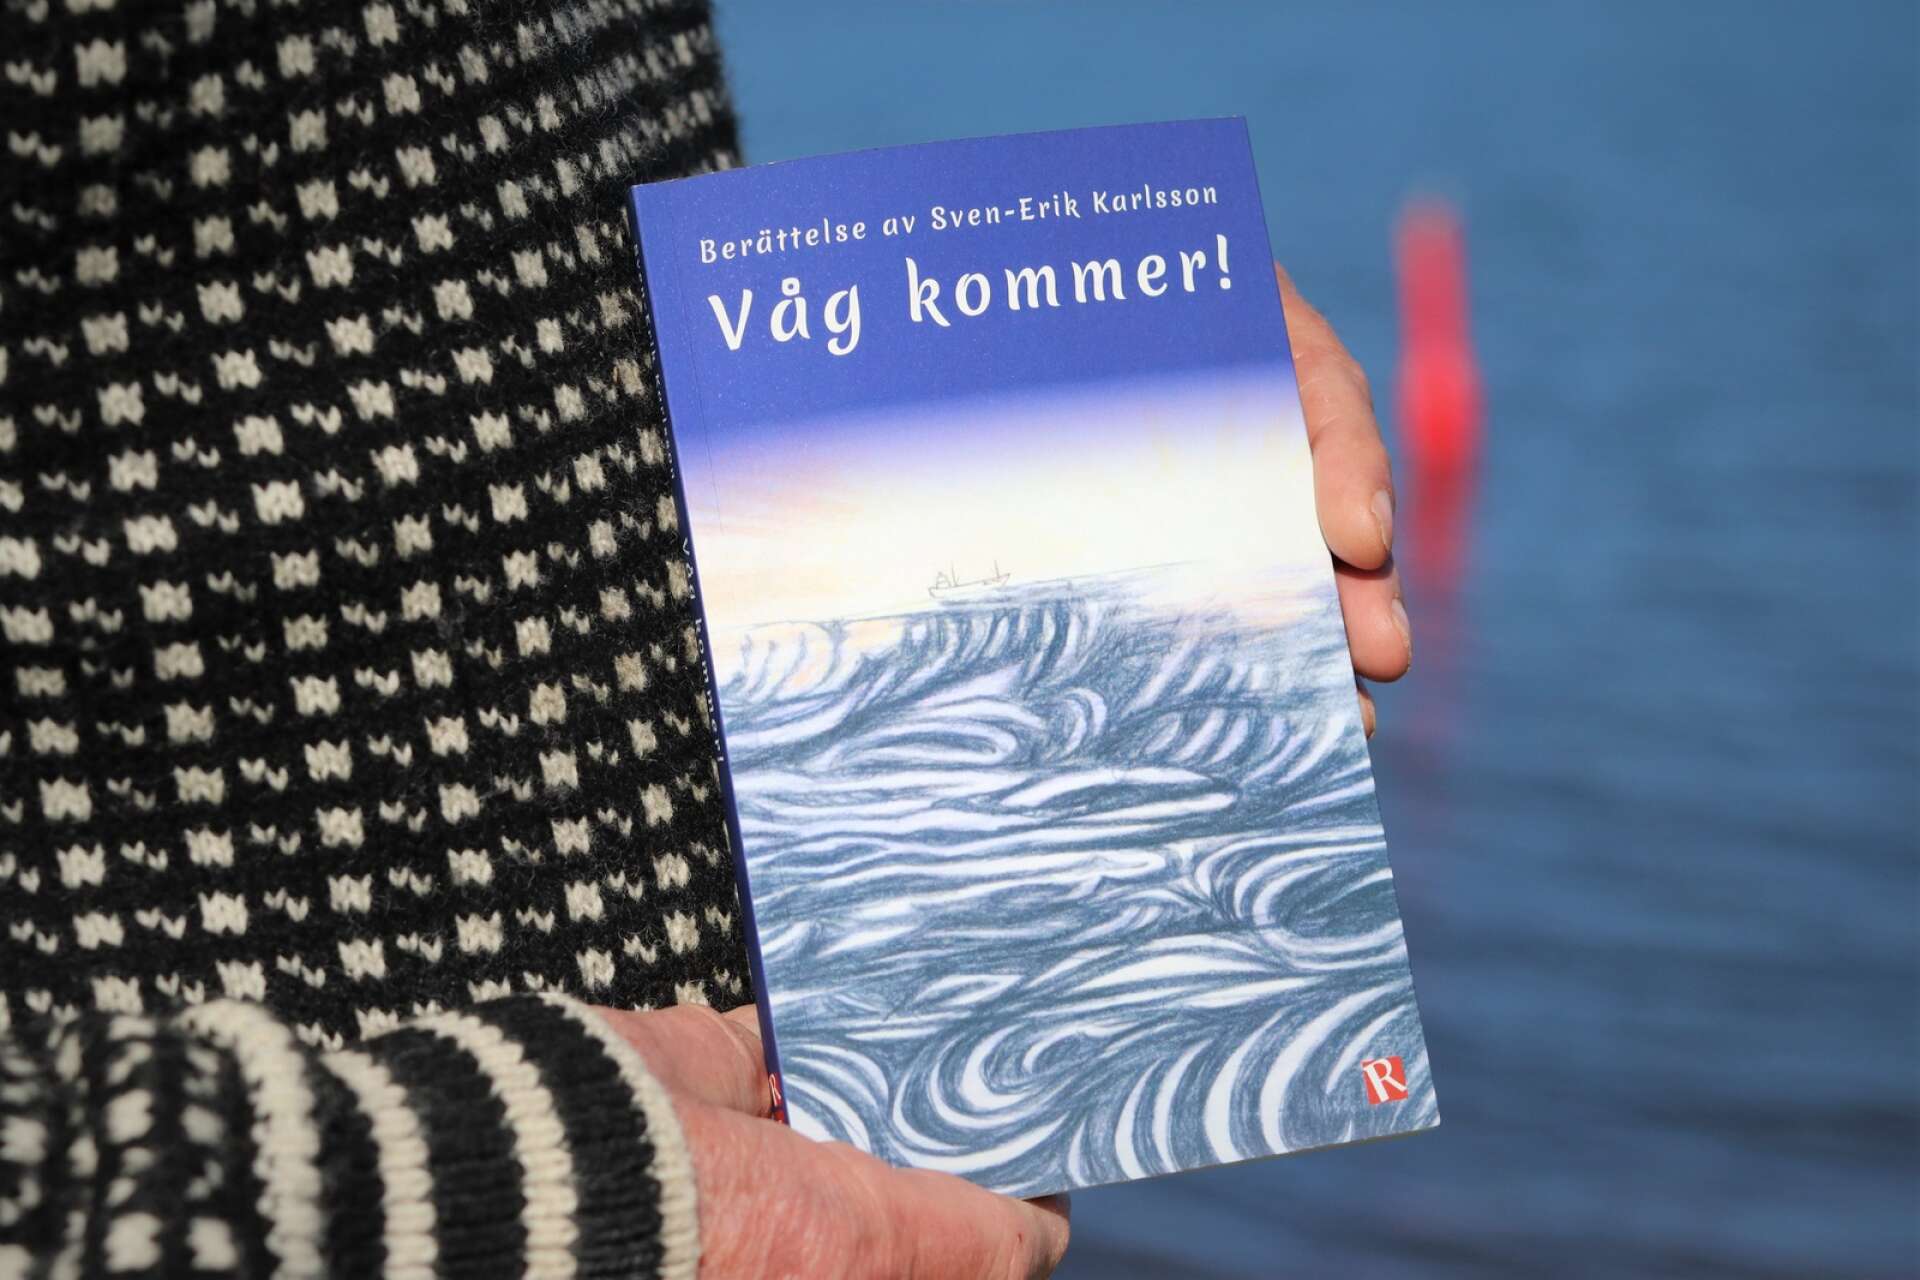 Författarens dotter, Lisa Karlsson- Zethelius har illustrerat omslaget samt de små illustrationer av fåglar och båtar som fyller boken. 